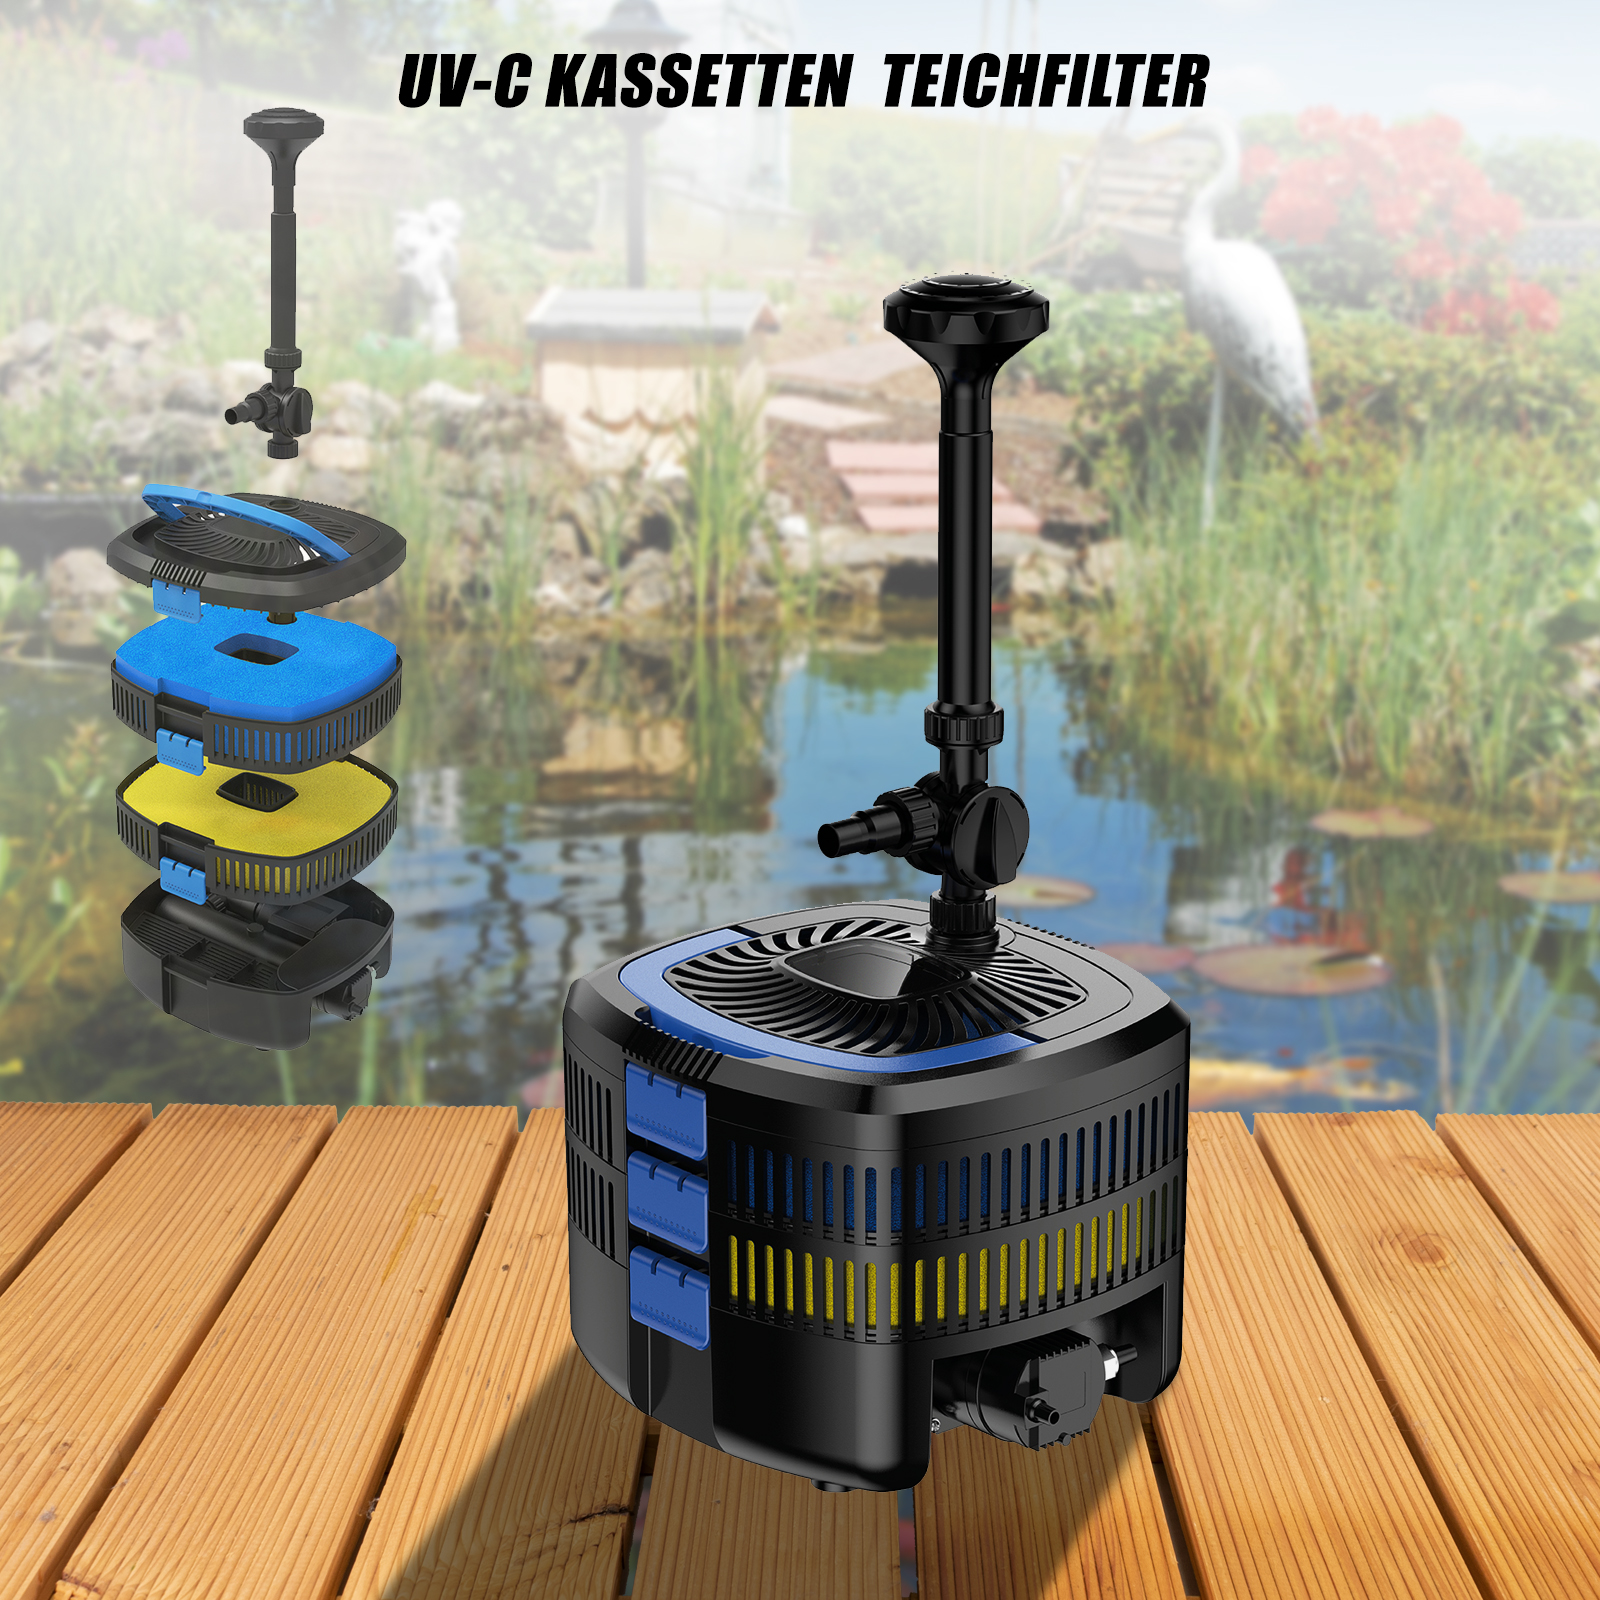 Mauk UV-C Kassetten Teichfilter System Reinigung & Fontäne Unterwasser Komplettset mit Pumpe & UV Lampe 